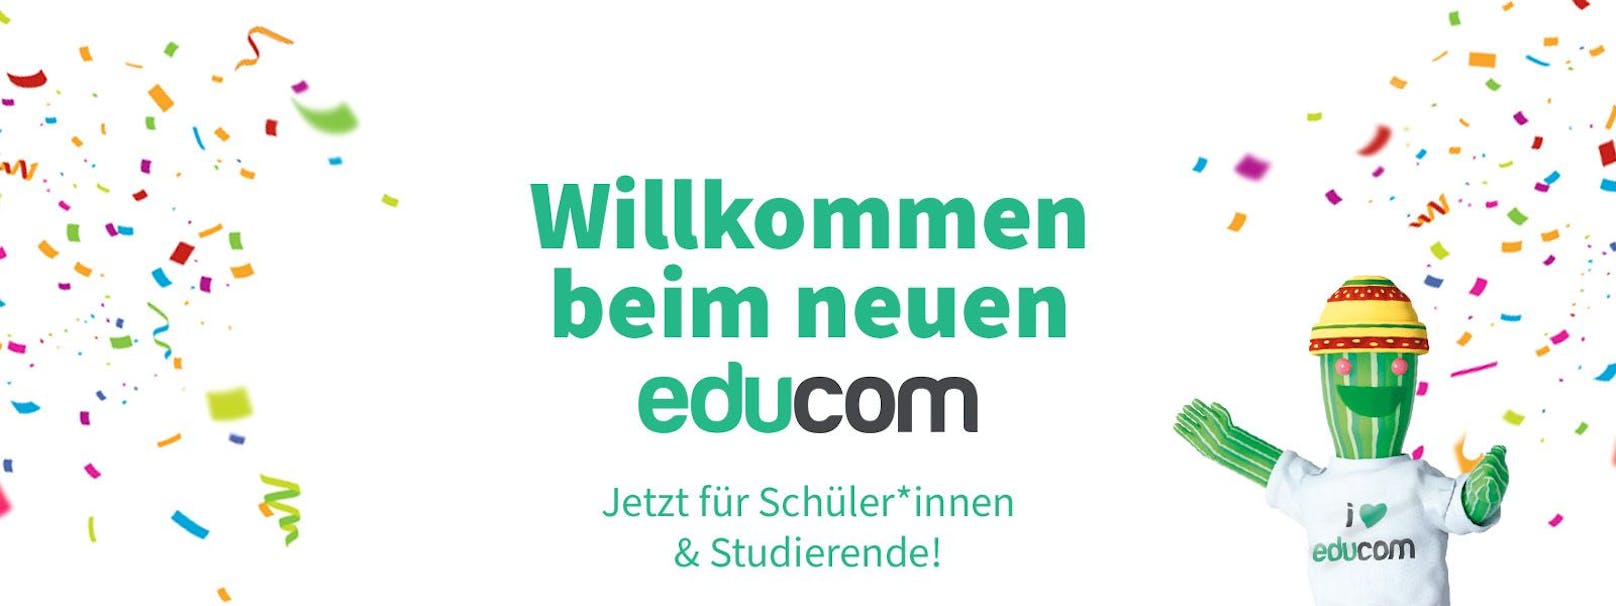 educom startet mit Free E-Learning.